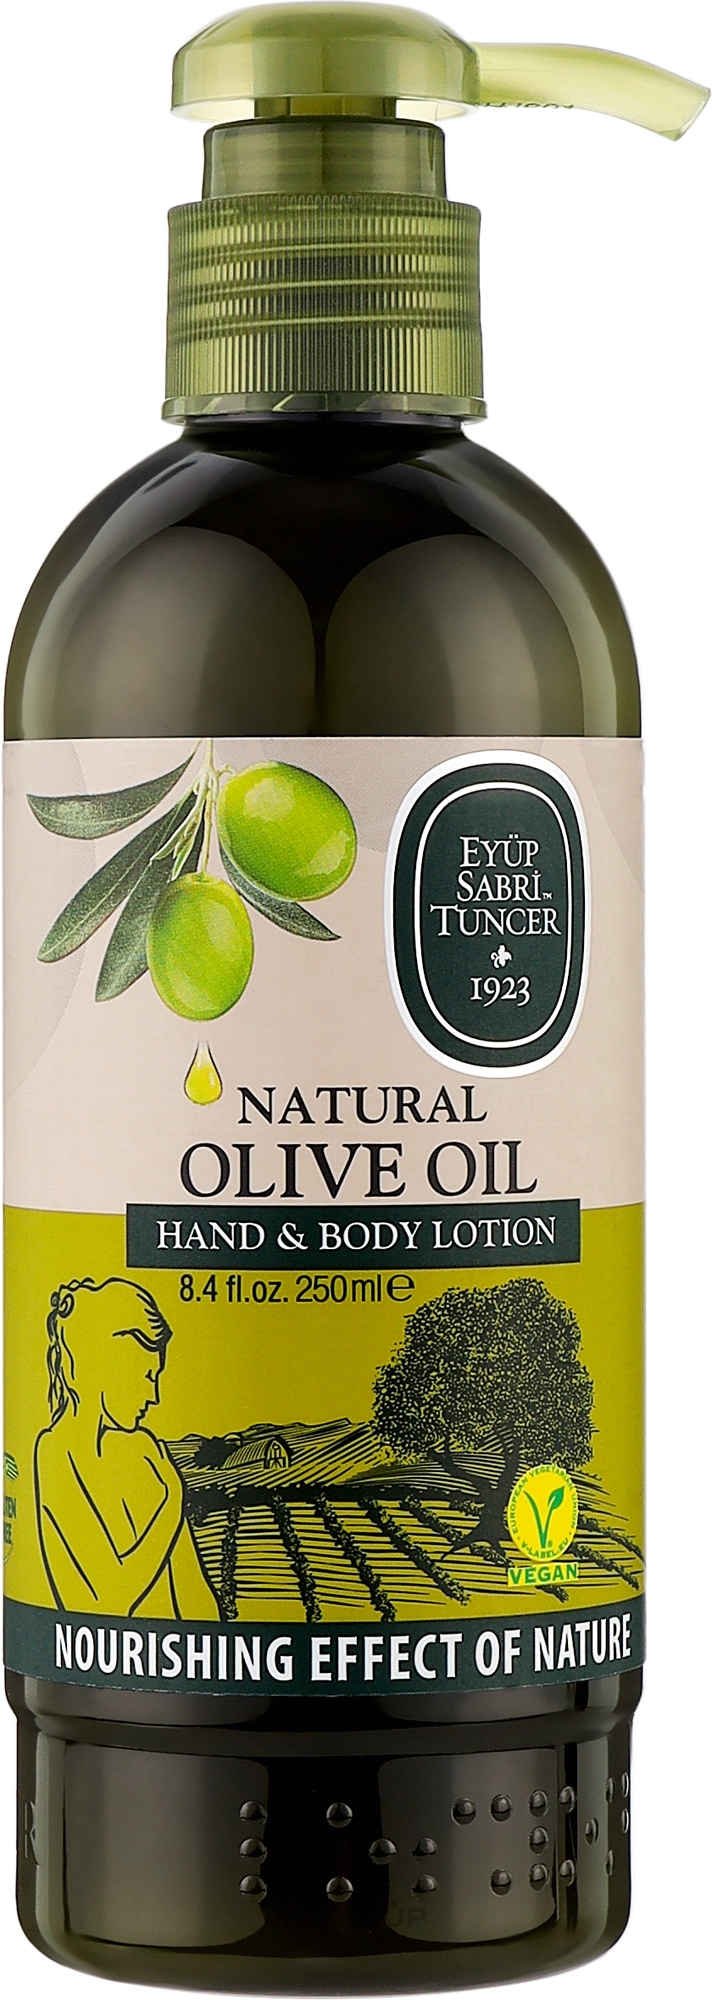 Увлажняющий лосьон для рук и тела с оливковым маслом и маслом ши - Eyup Sabri Tuncer Olive Oil — фото 250ml